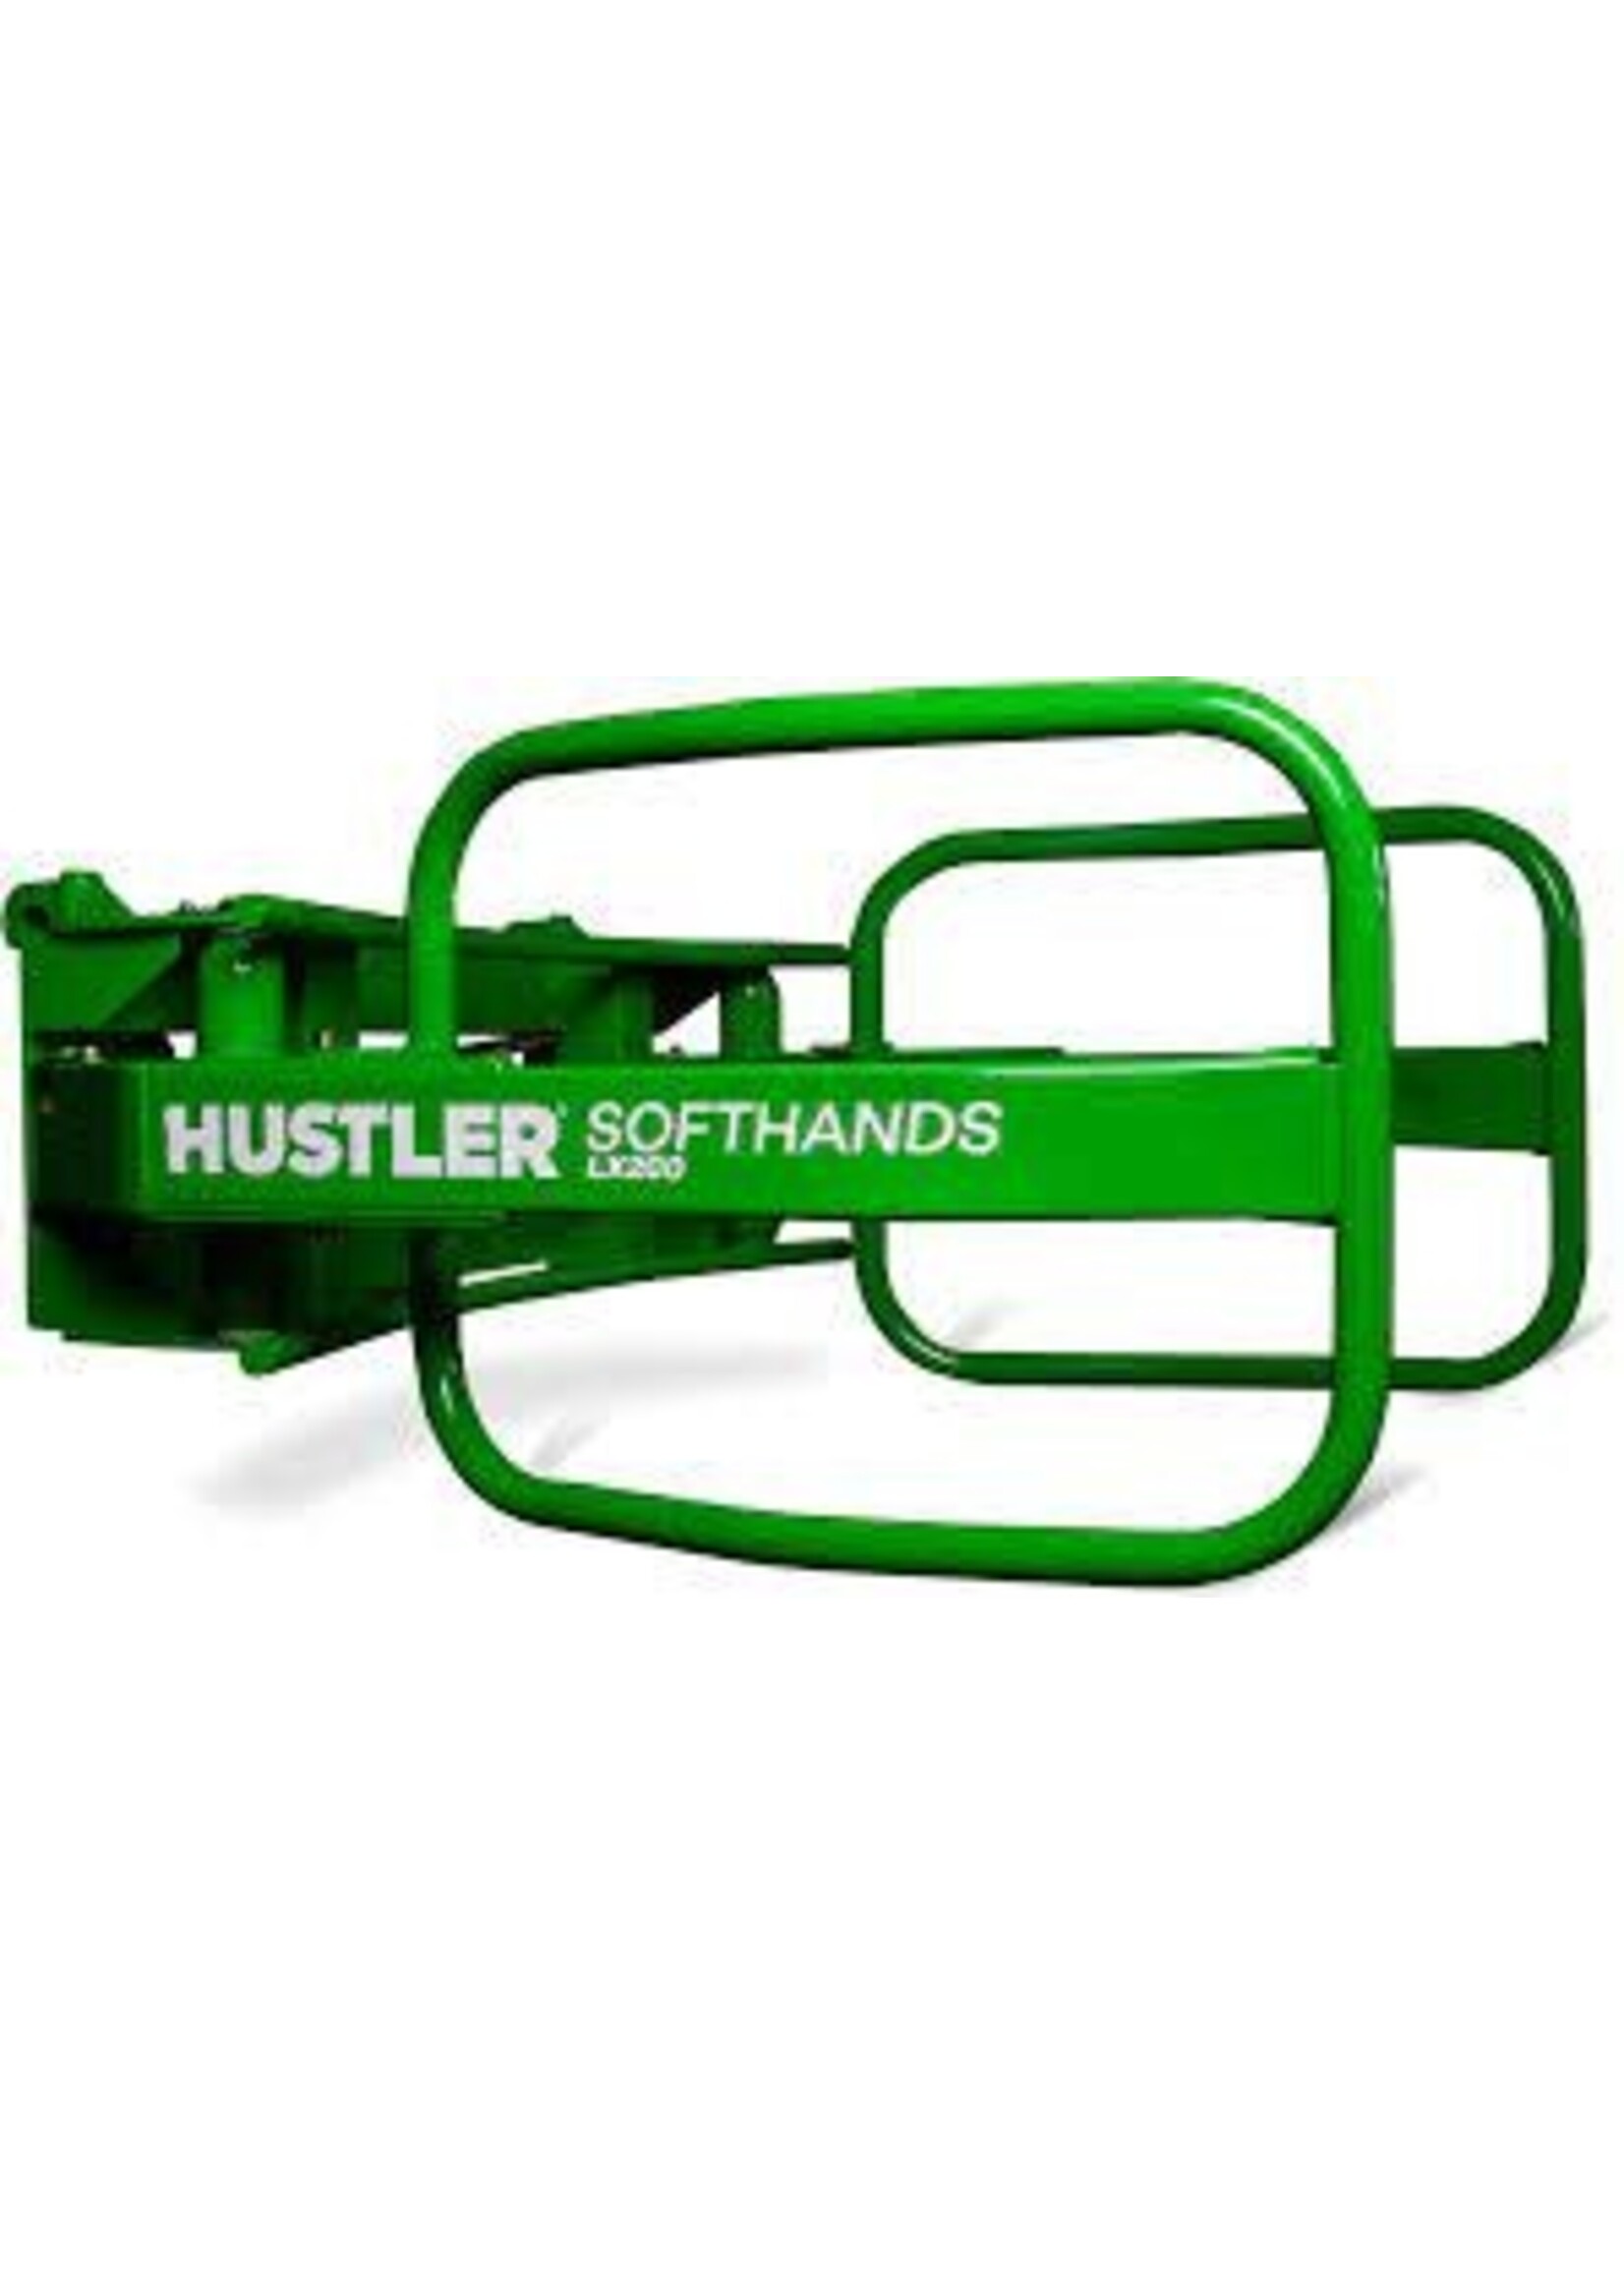 Hustler Softhands LX200 -